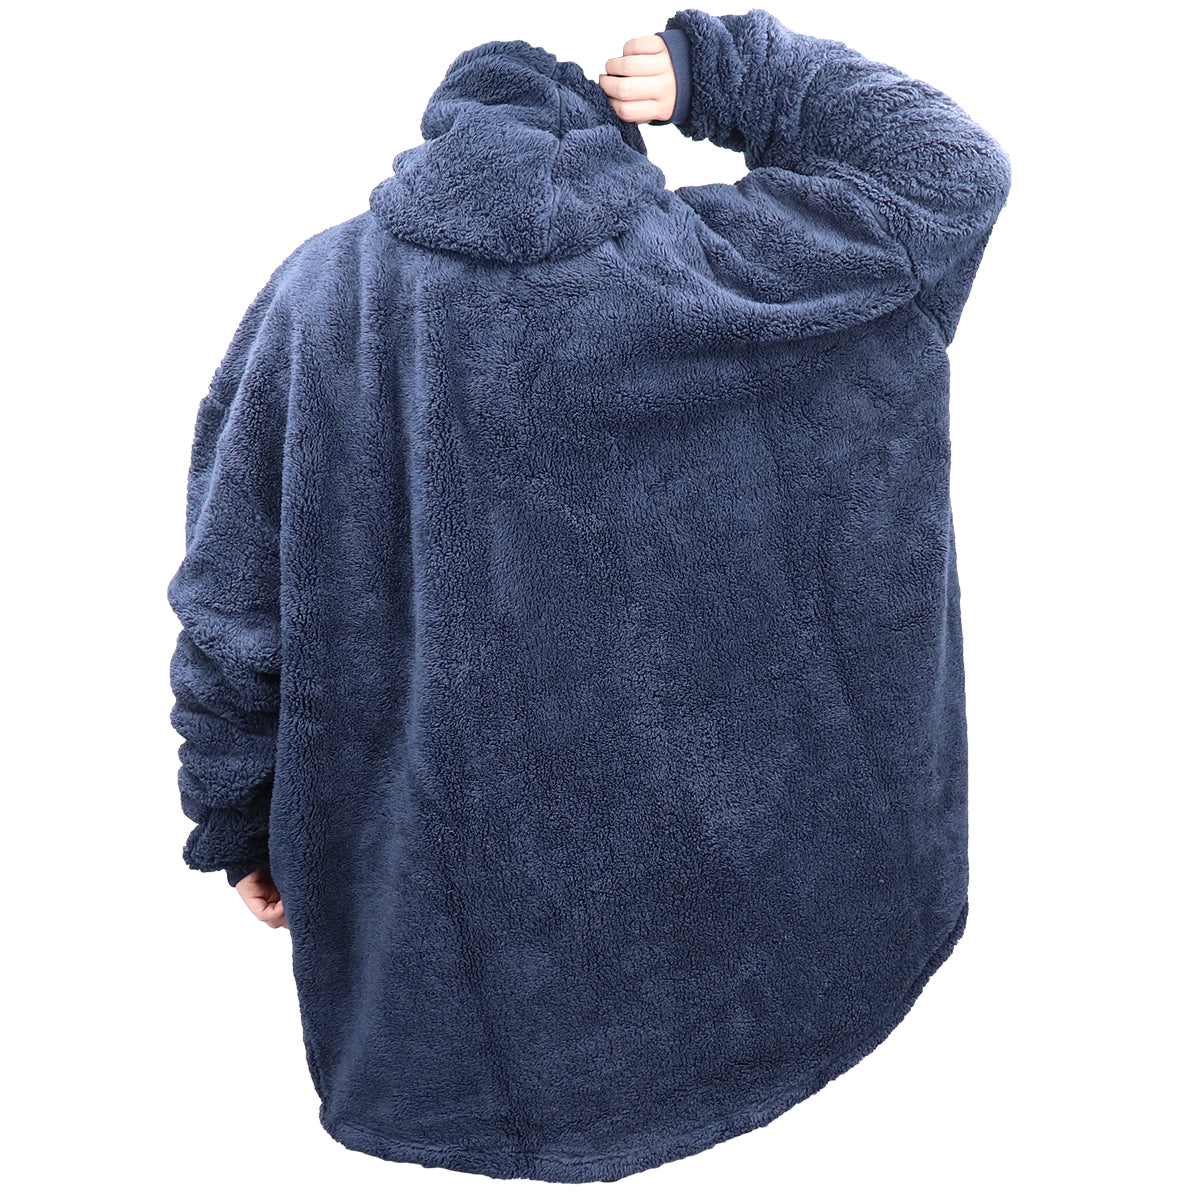 Oversized Soft Pullover Plain Hoodie Warm Fleece Blanket Plush Winter Sweatshirt, Blue Tie-Dye, Adult